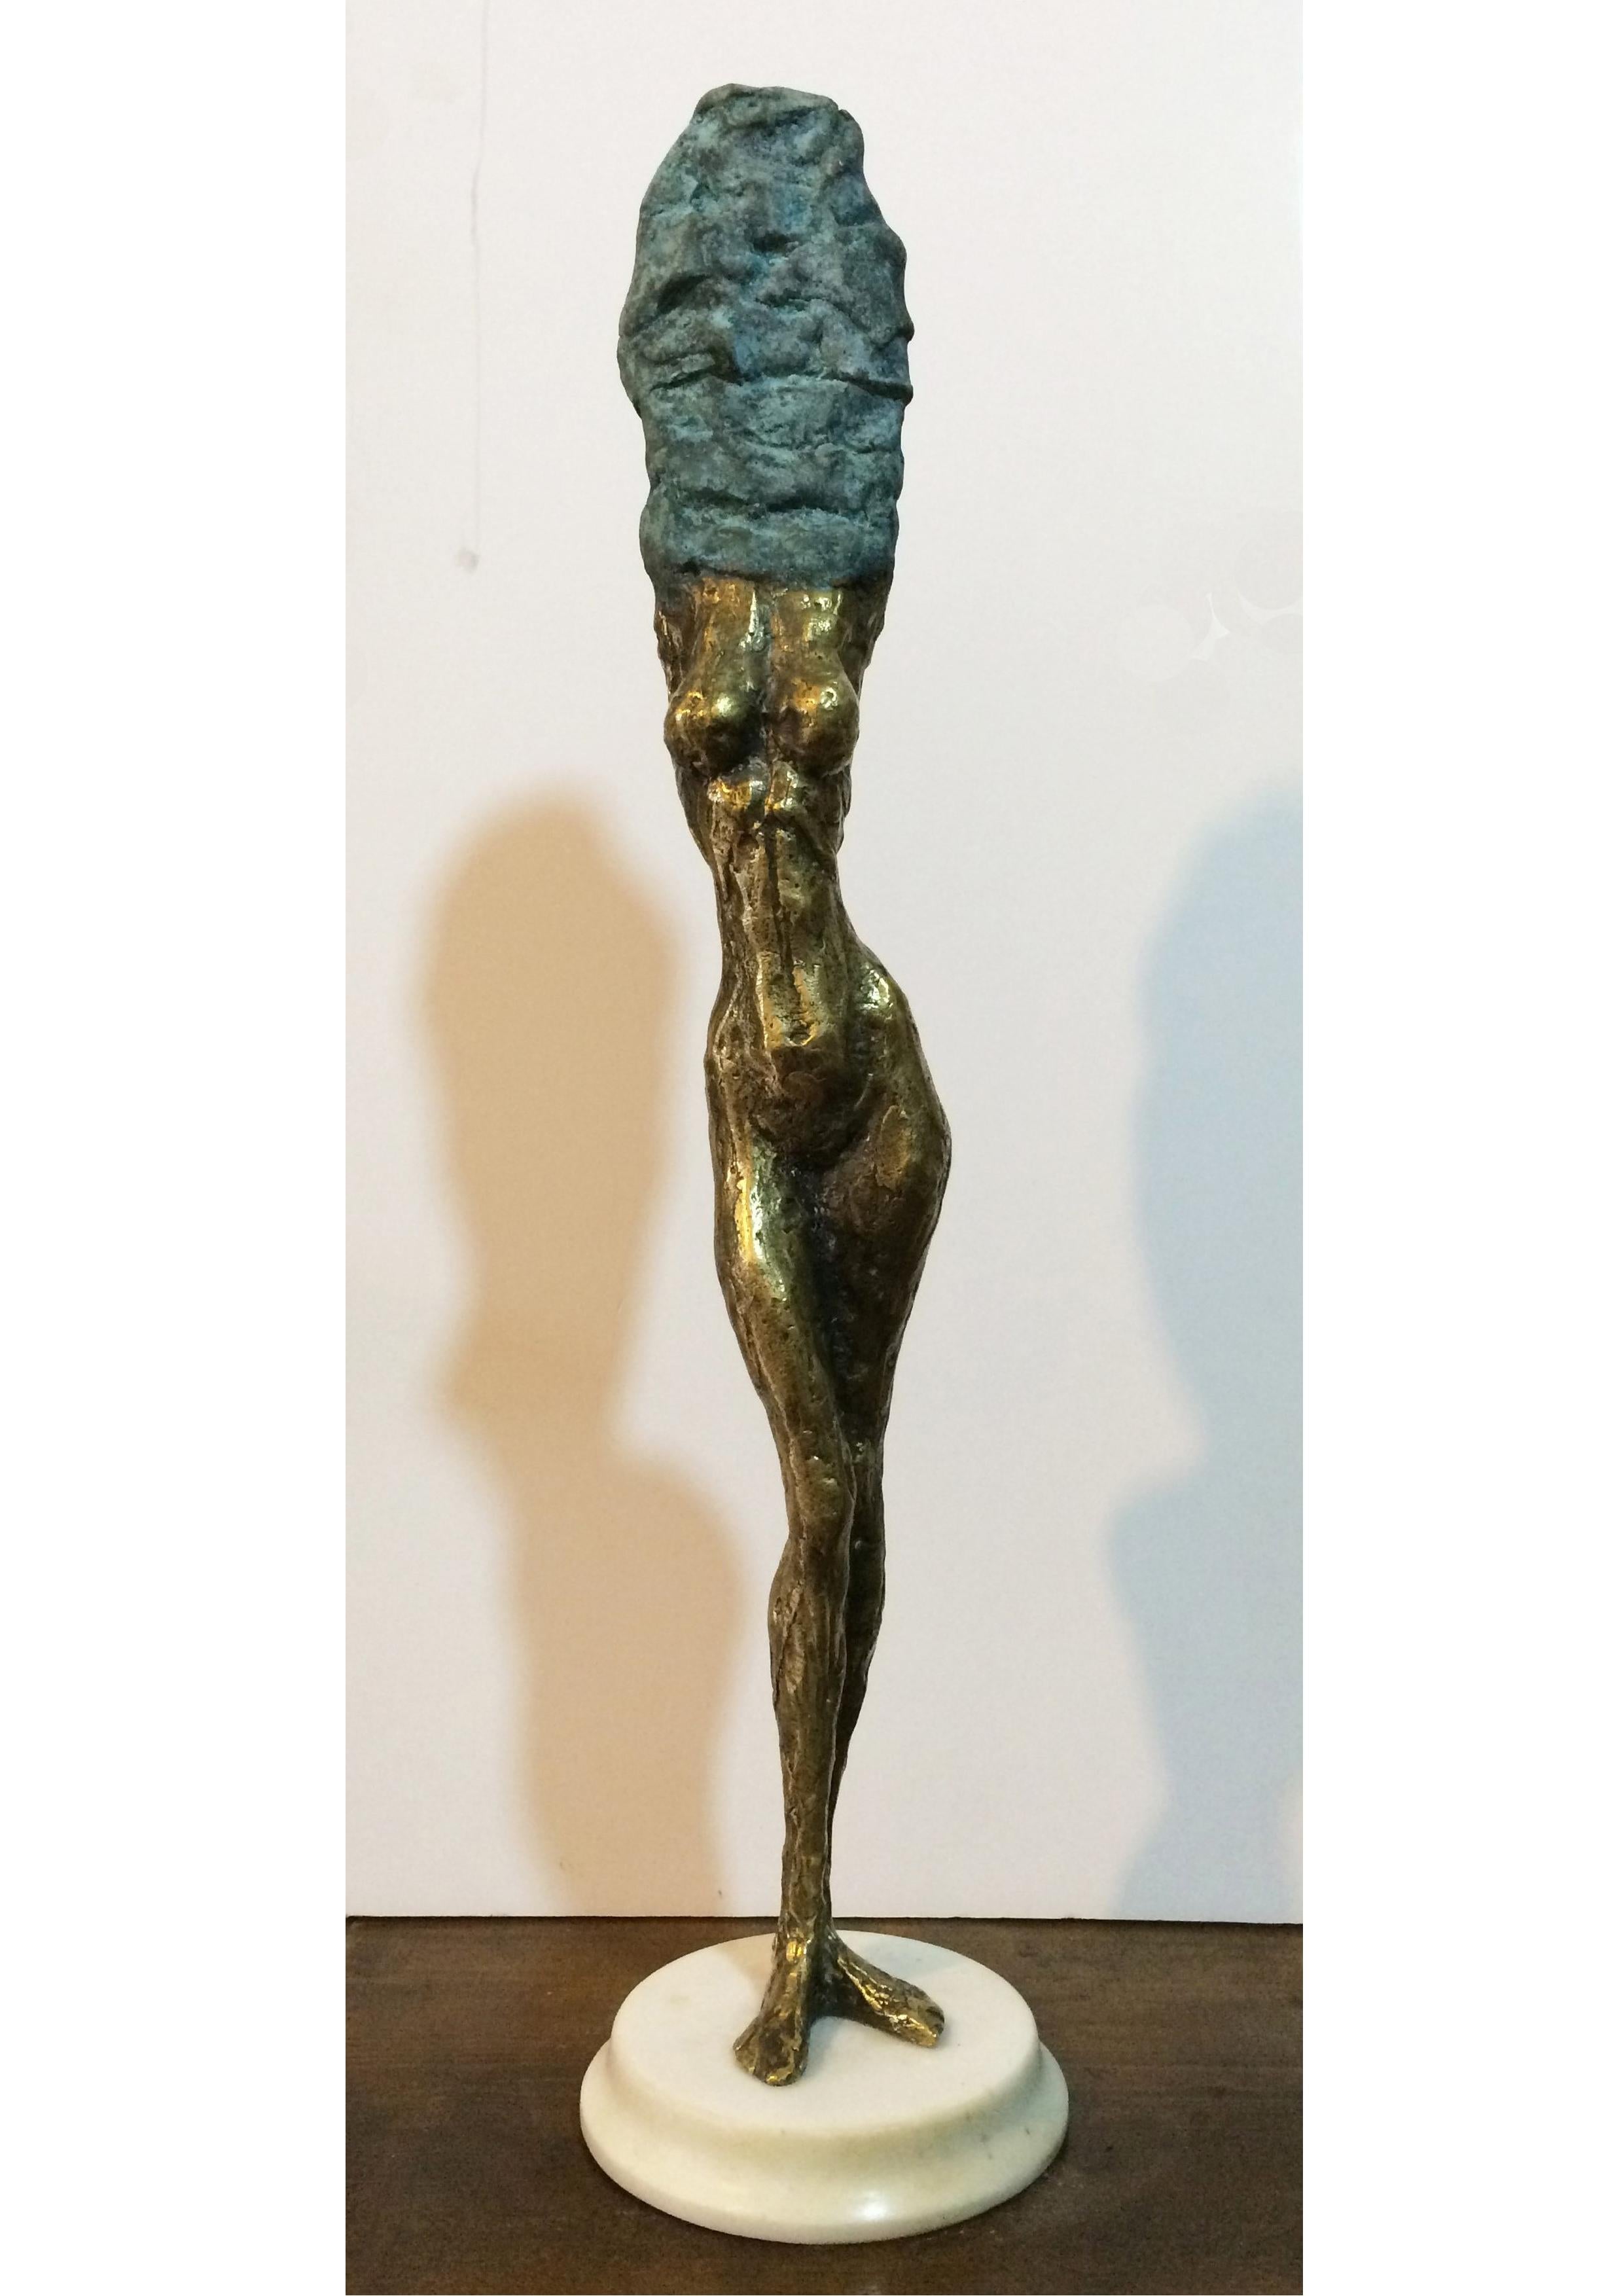 Bronze et marbre

Irakli Tsuladze est un sculpteur géorgien né en 1973 qui vit et travaille à Tbilissi, en Géorgie. Ses sculptures présentent une unité particulière de substance et d'émotions, où l'expression des sentiments gouverne la forme.